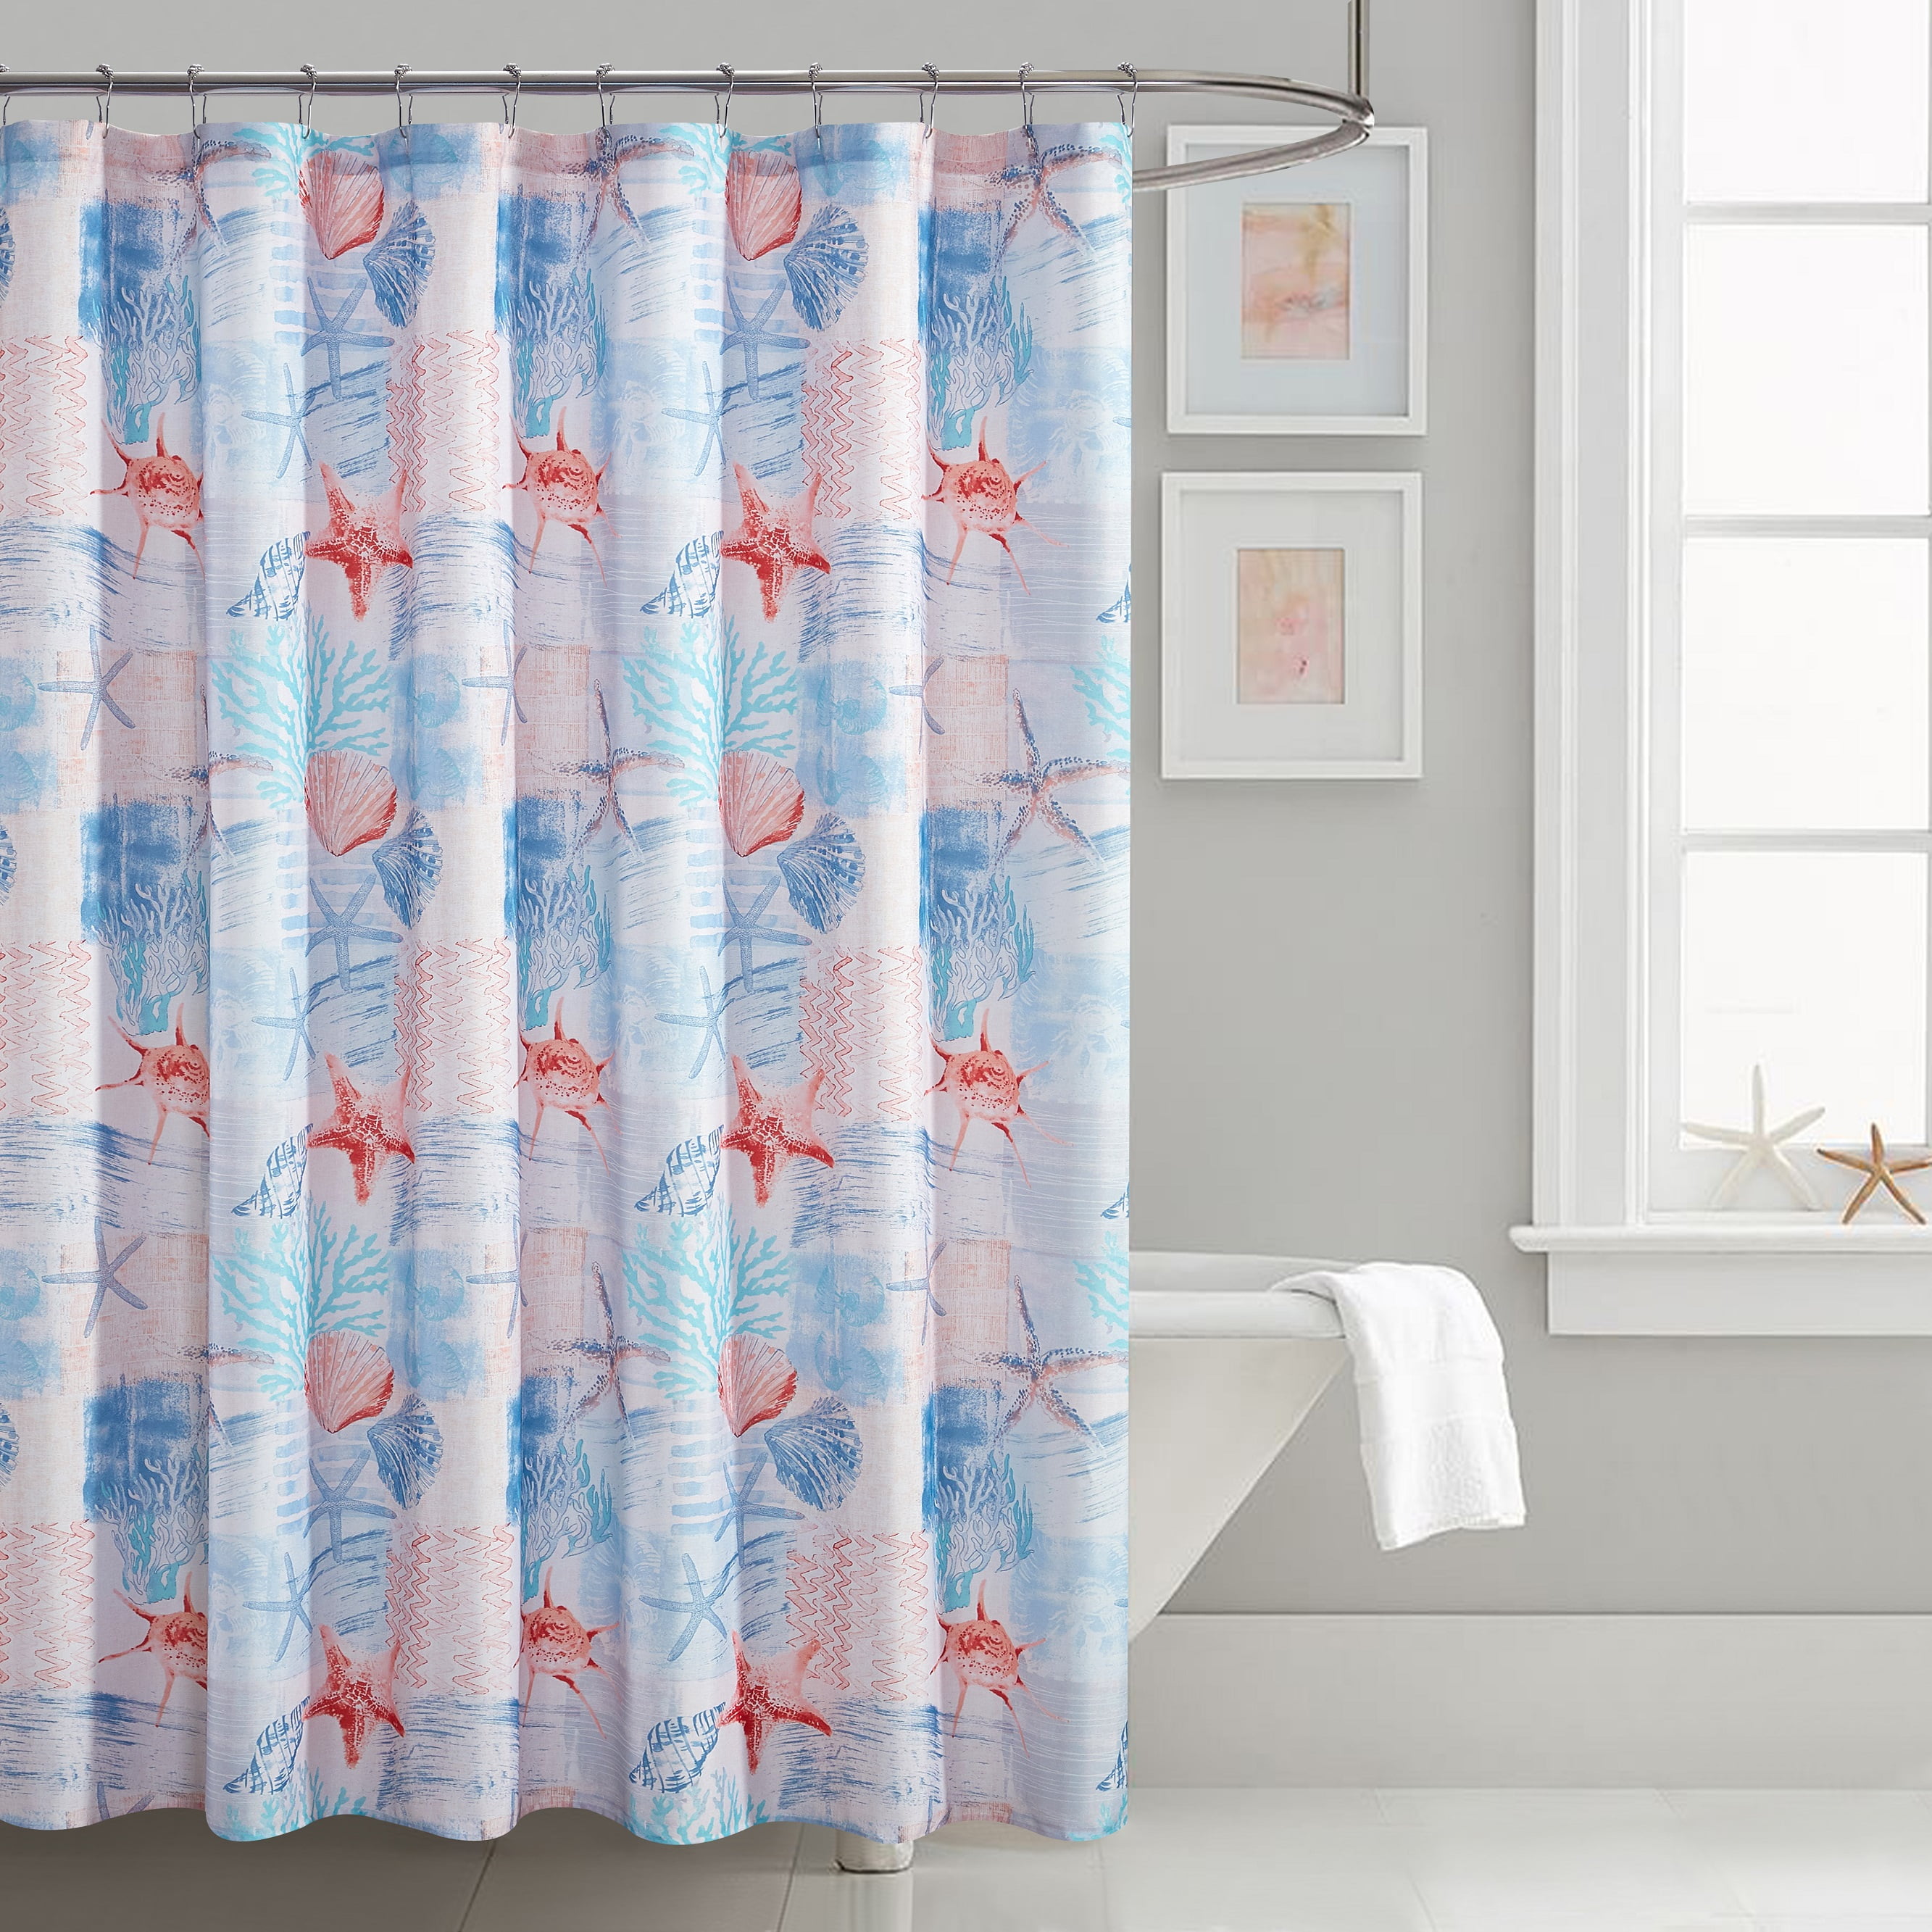 Elegant 70" X 72" Solid Blue Fabric Shower Curtain Bathroom Decor